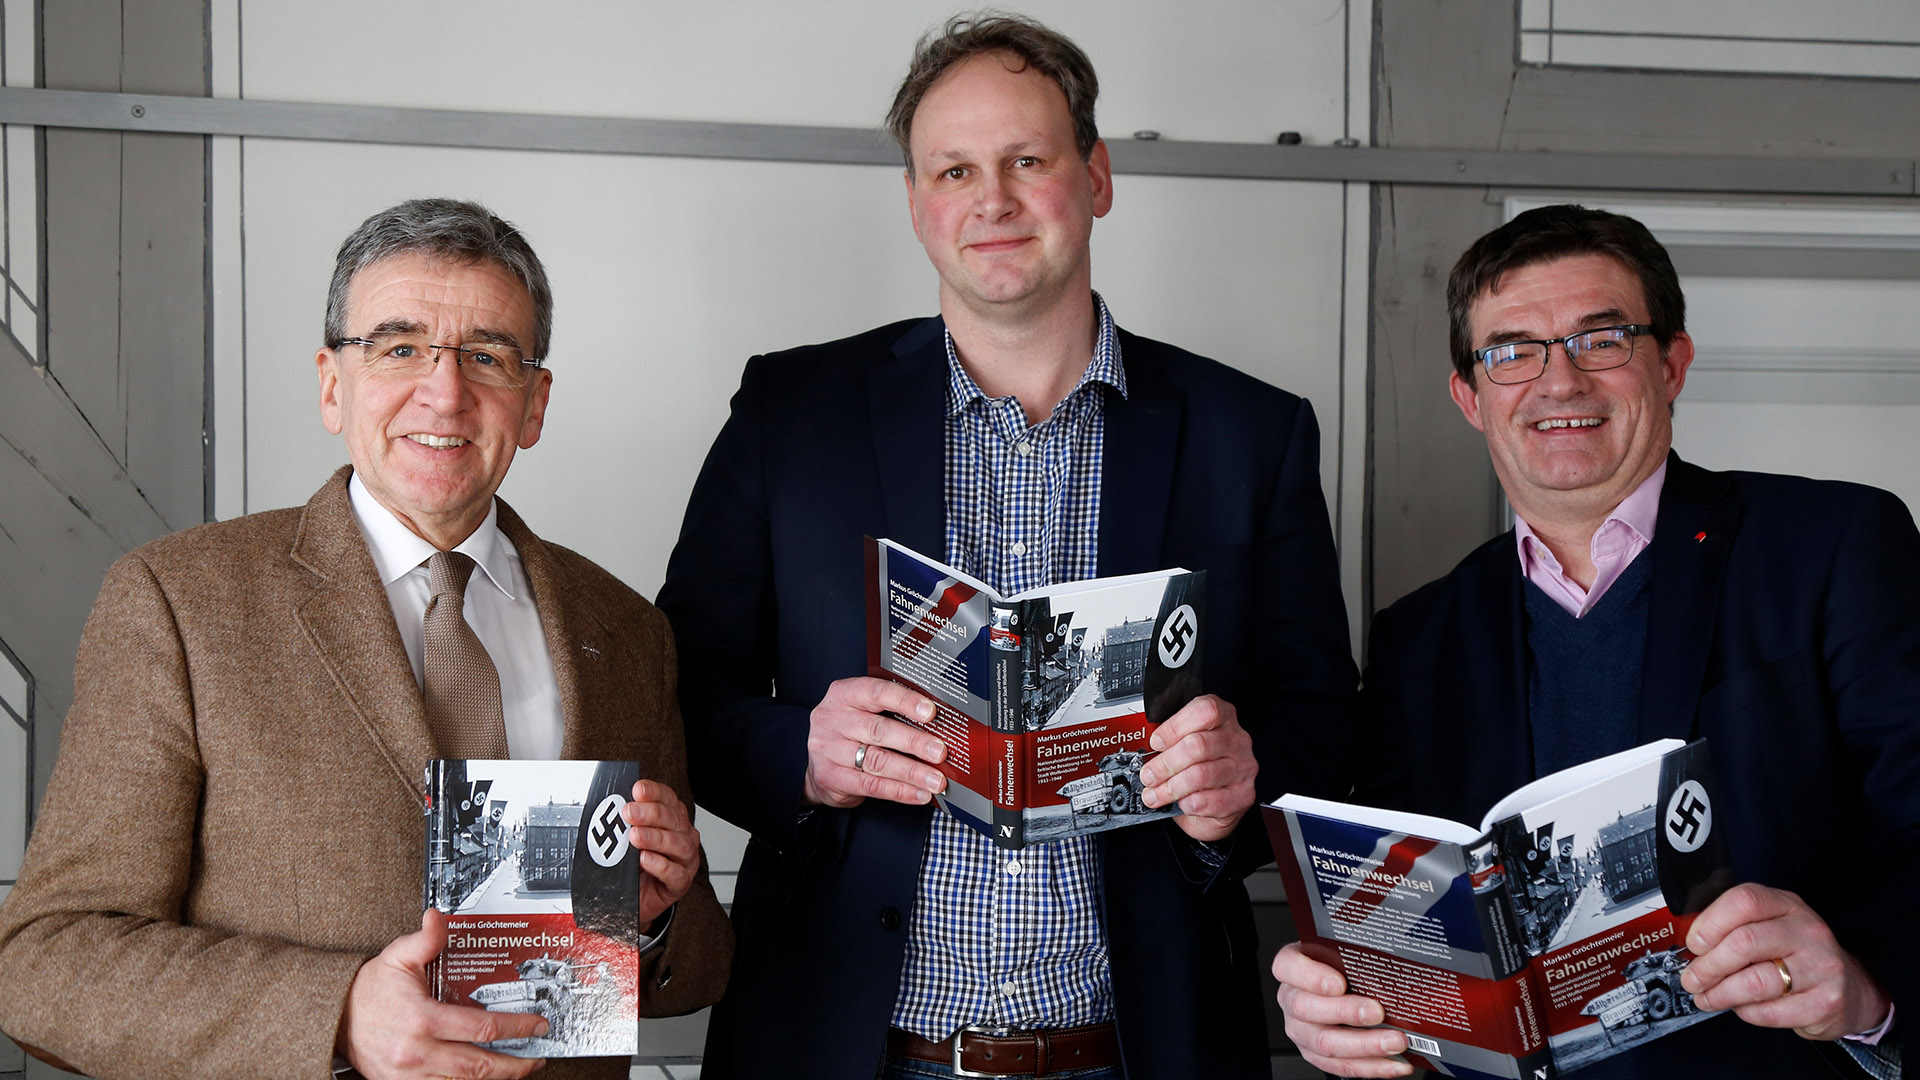 Das Foto zeigt drei Personen: Wolfenbüttels Bürgermeister Thomas Pink, Autor Markus Gröchtemeier und Verleger Carsten Holzendorff. Sie alle halten das Buch mit dem Titel »Fahnenwechsel« in die Kamera.